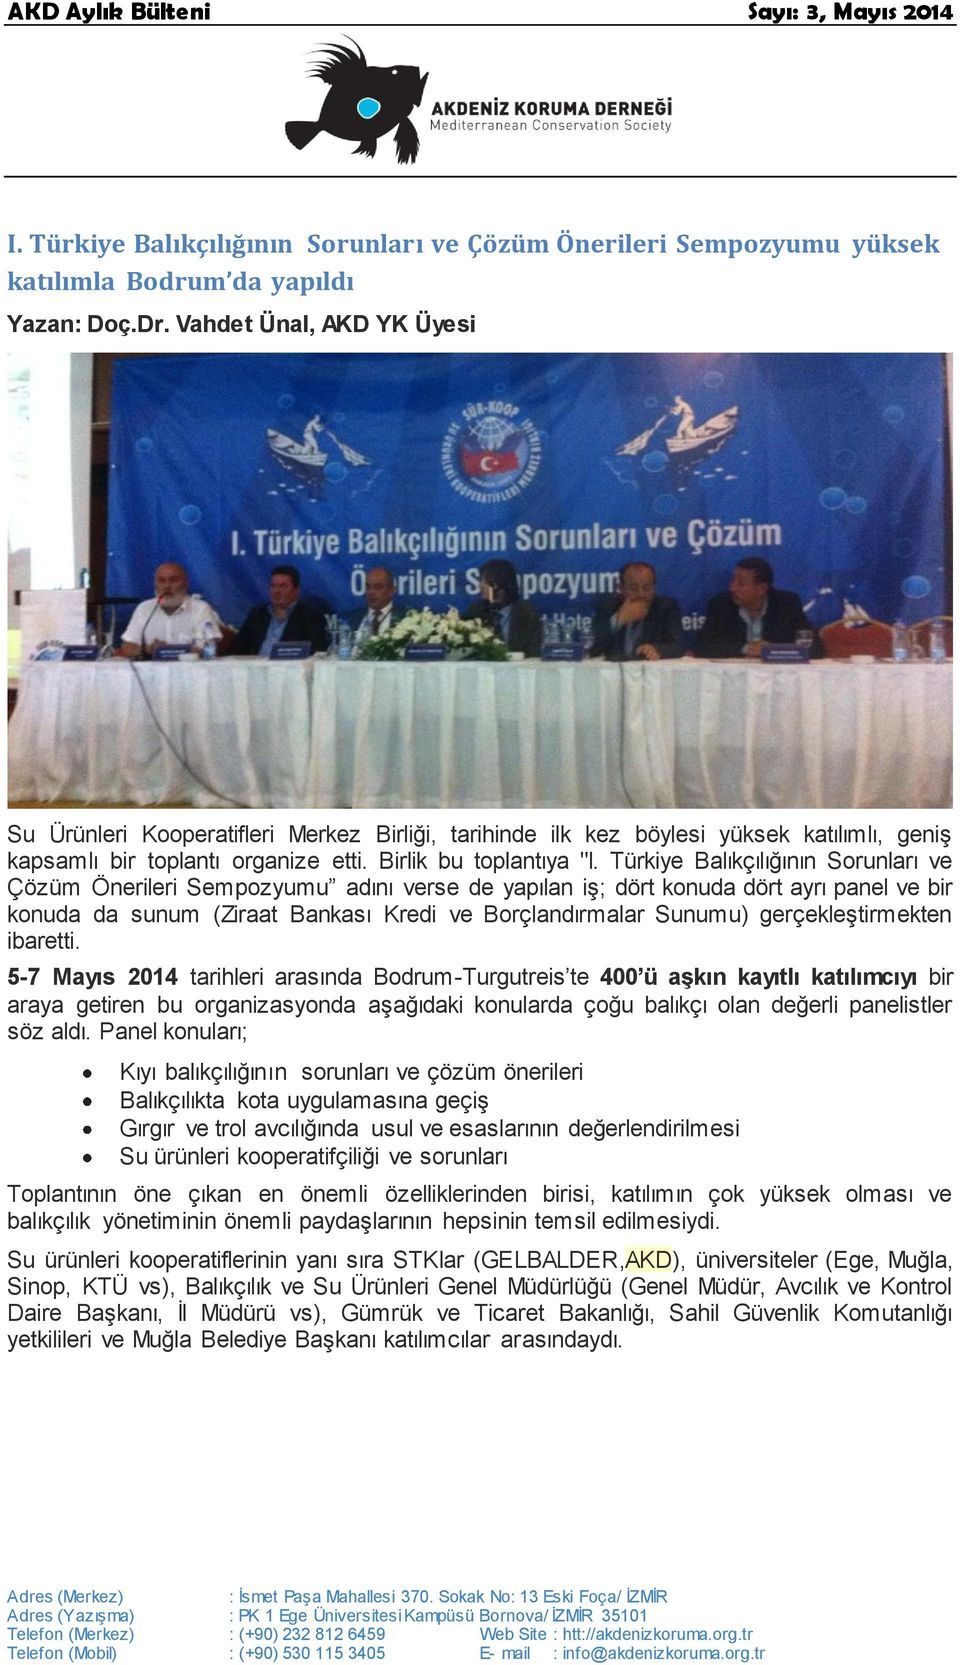 Türkiye Balıkçılığının Sorunları ve Çözüm Önerileri Sempozyumu adını verse de yapılan iş; dört konuda dört ayrı panel ve bir konuda da sunum (Ziraat Bankası Kredi ve Borçlandırmalar Sunumu)